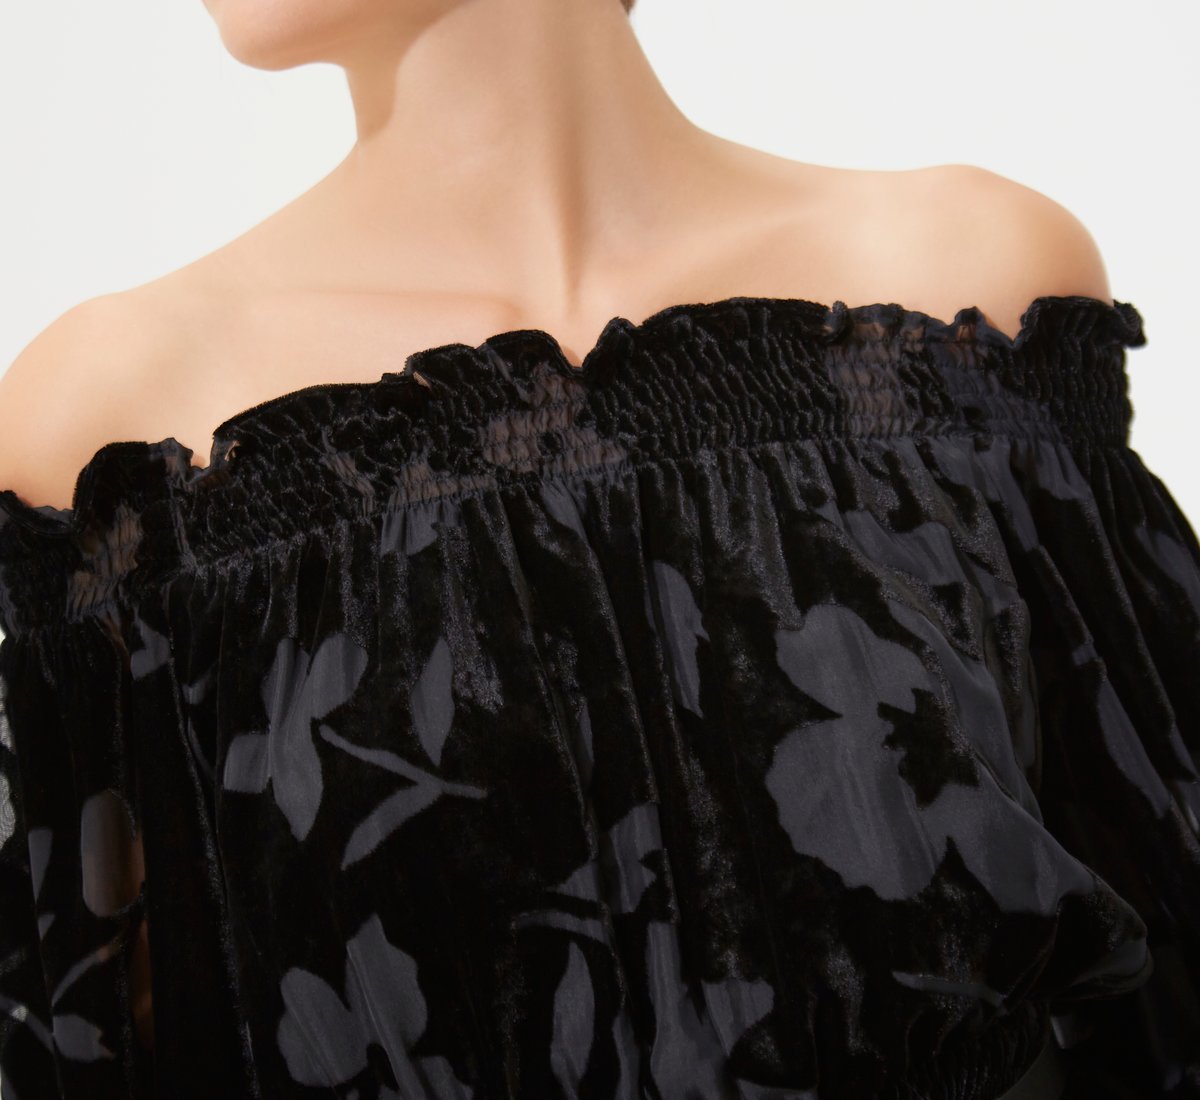 Short black patterned dress